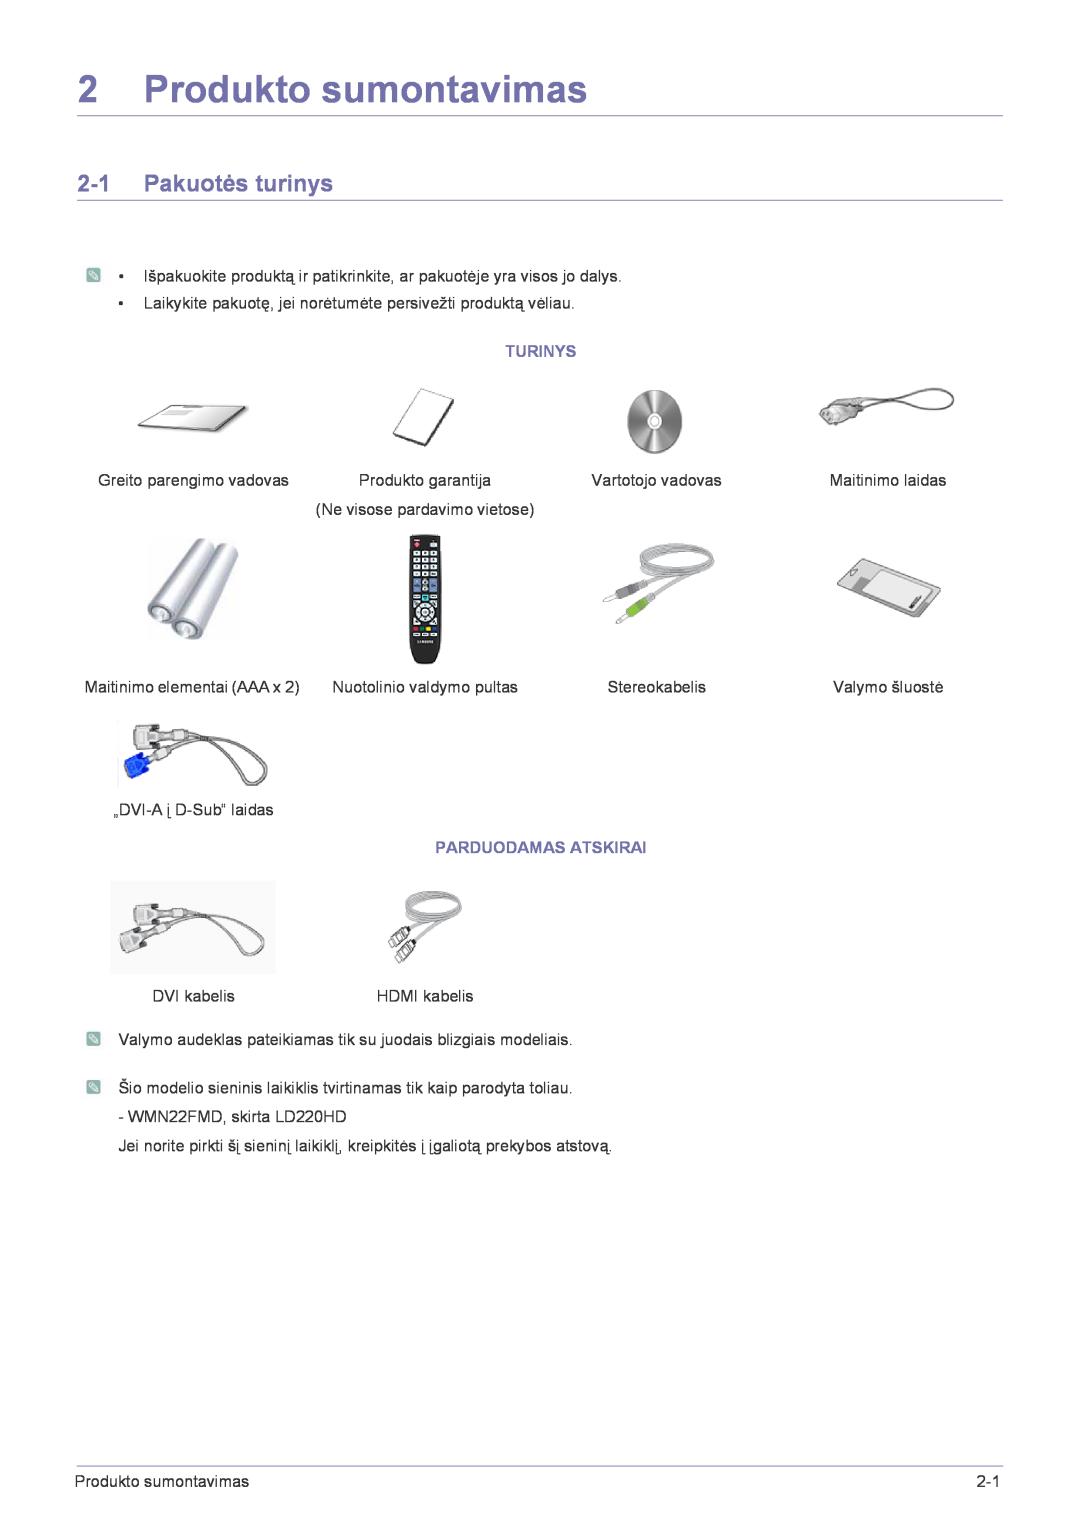 Samsung LS22FMDGF/EN manual Produkto sumontavimas, Pakuotės turinys, Turinys, Parduodamas Atskirai 